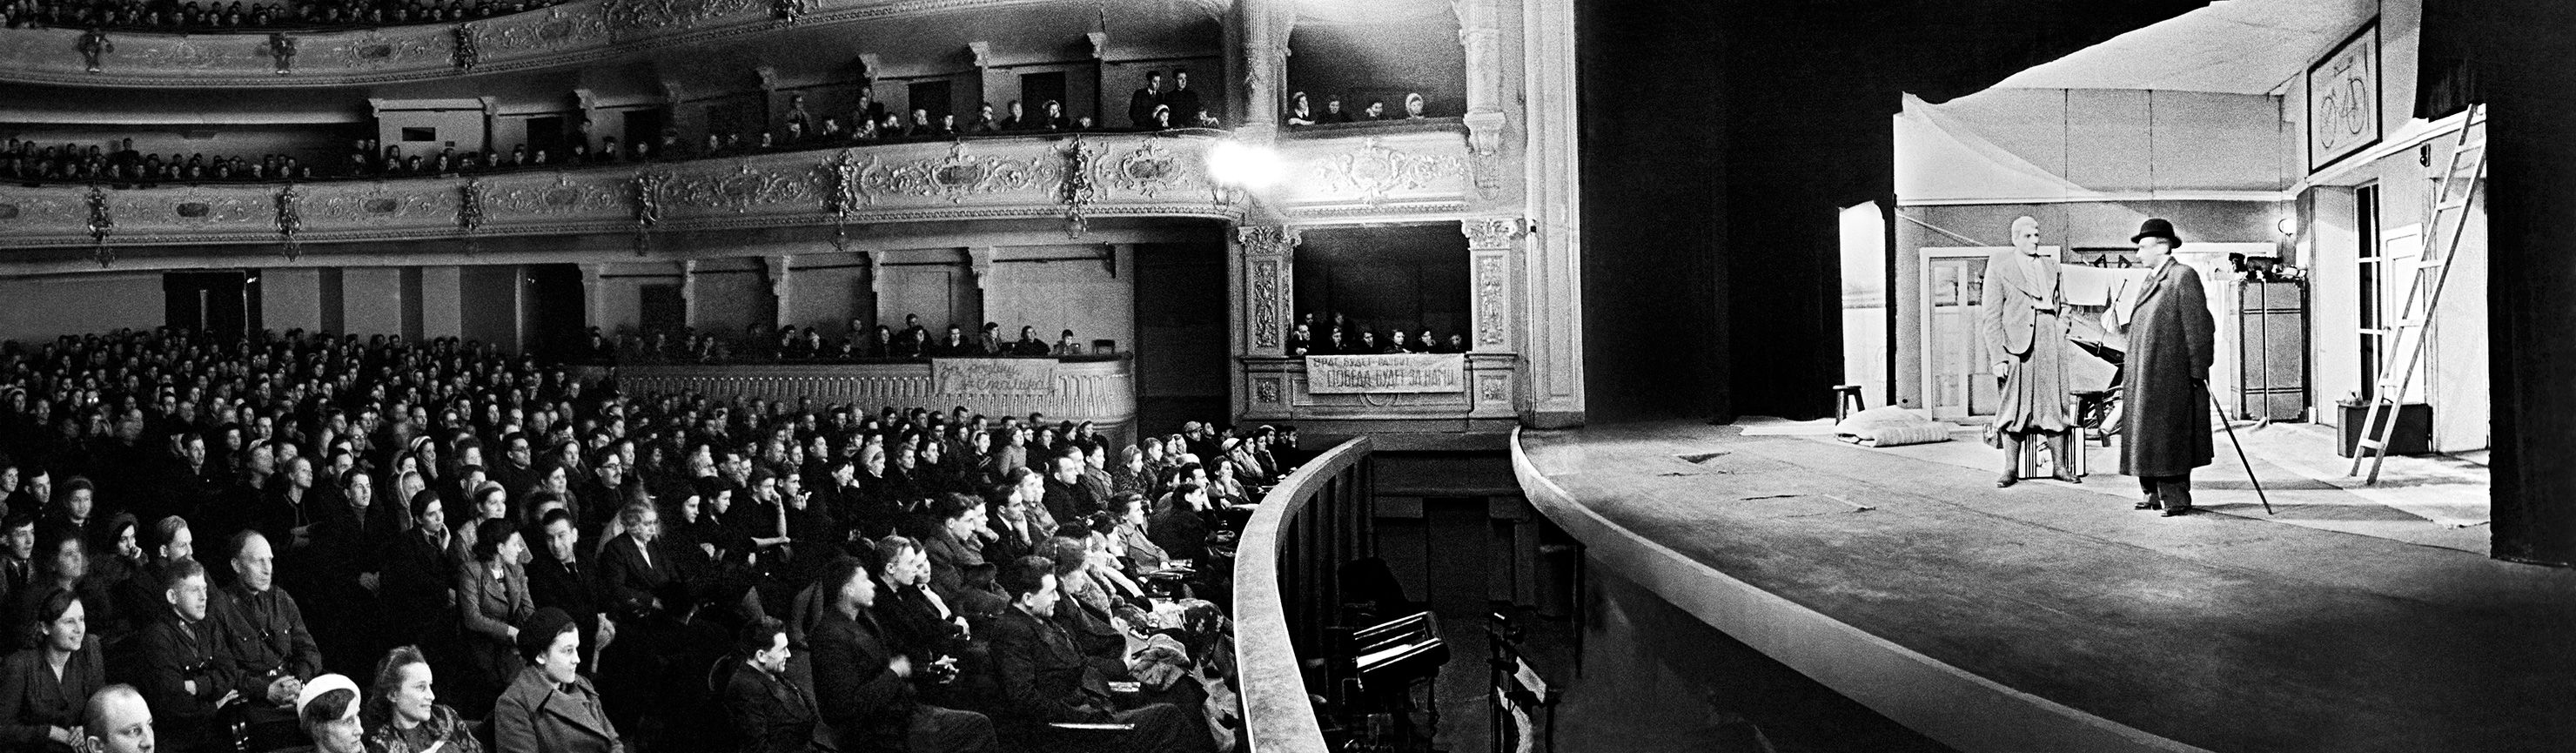 За да съхрани духа на хората, Музикалният комедиен театър играел пред публиката в града в Александровския театър. Известният съветски пианист Дмитрий Шостакович написал световно известната Симфония №7 по време на блокадата.